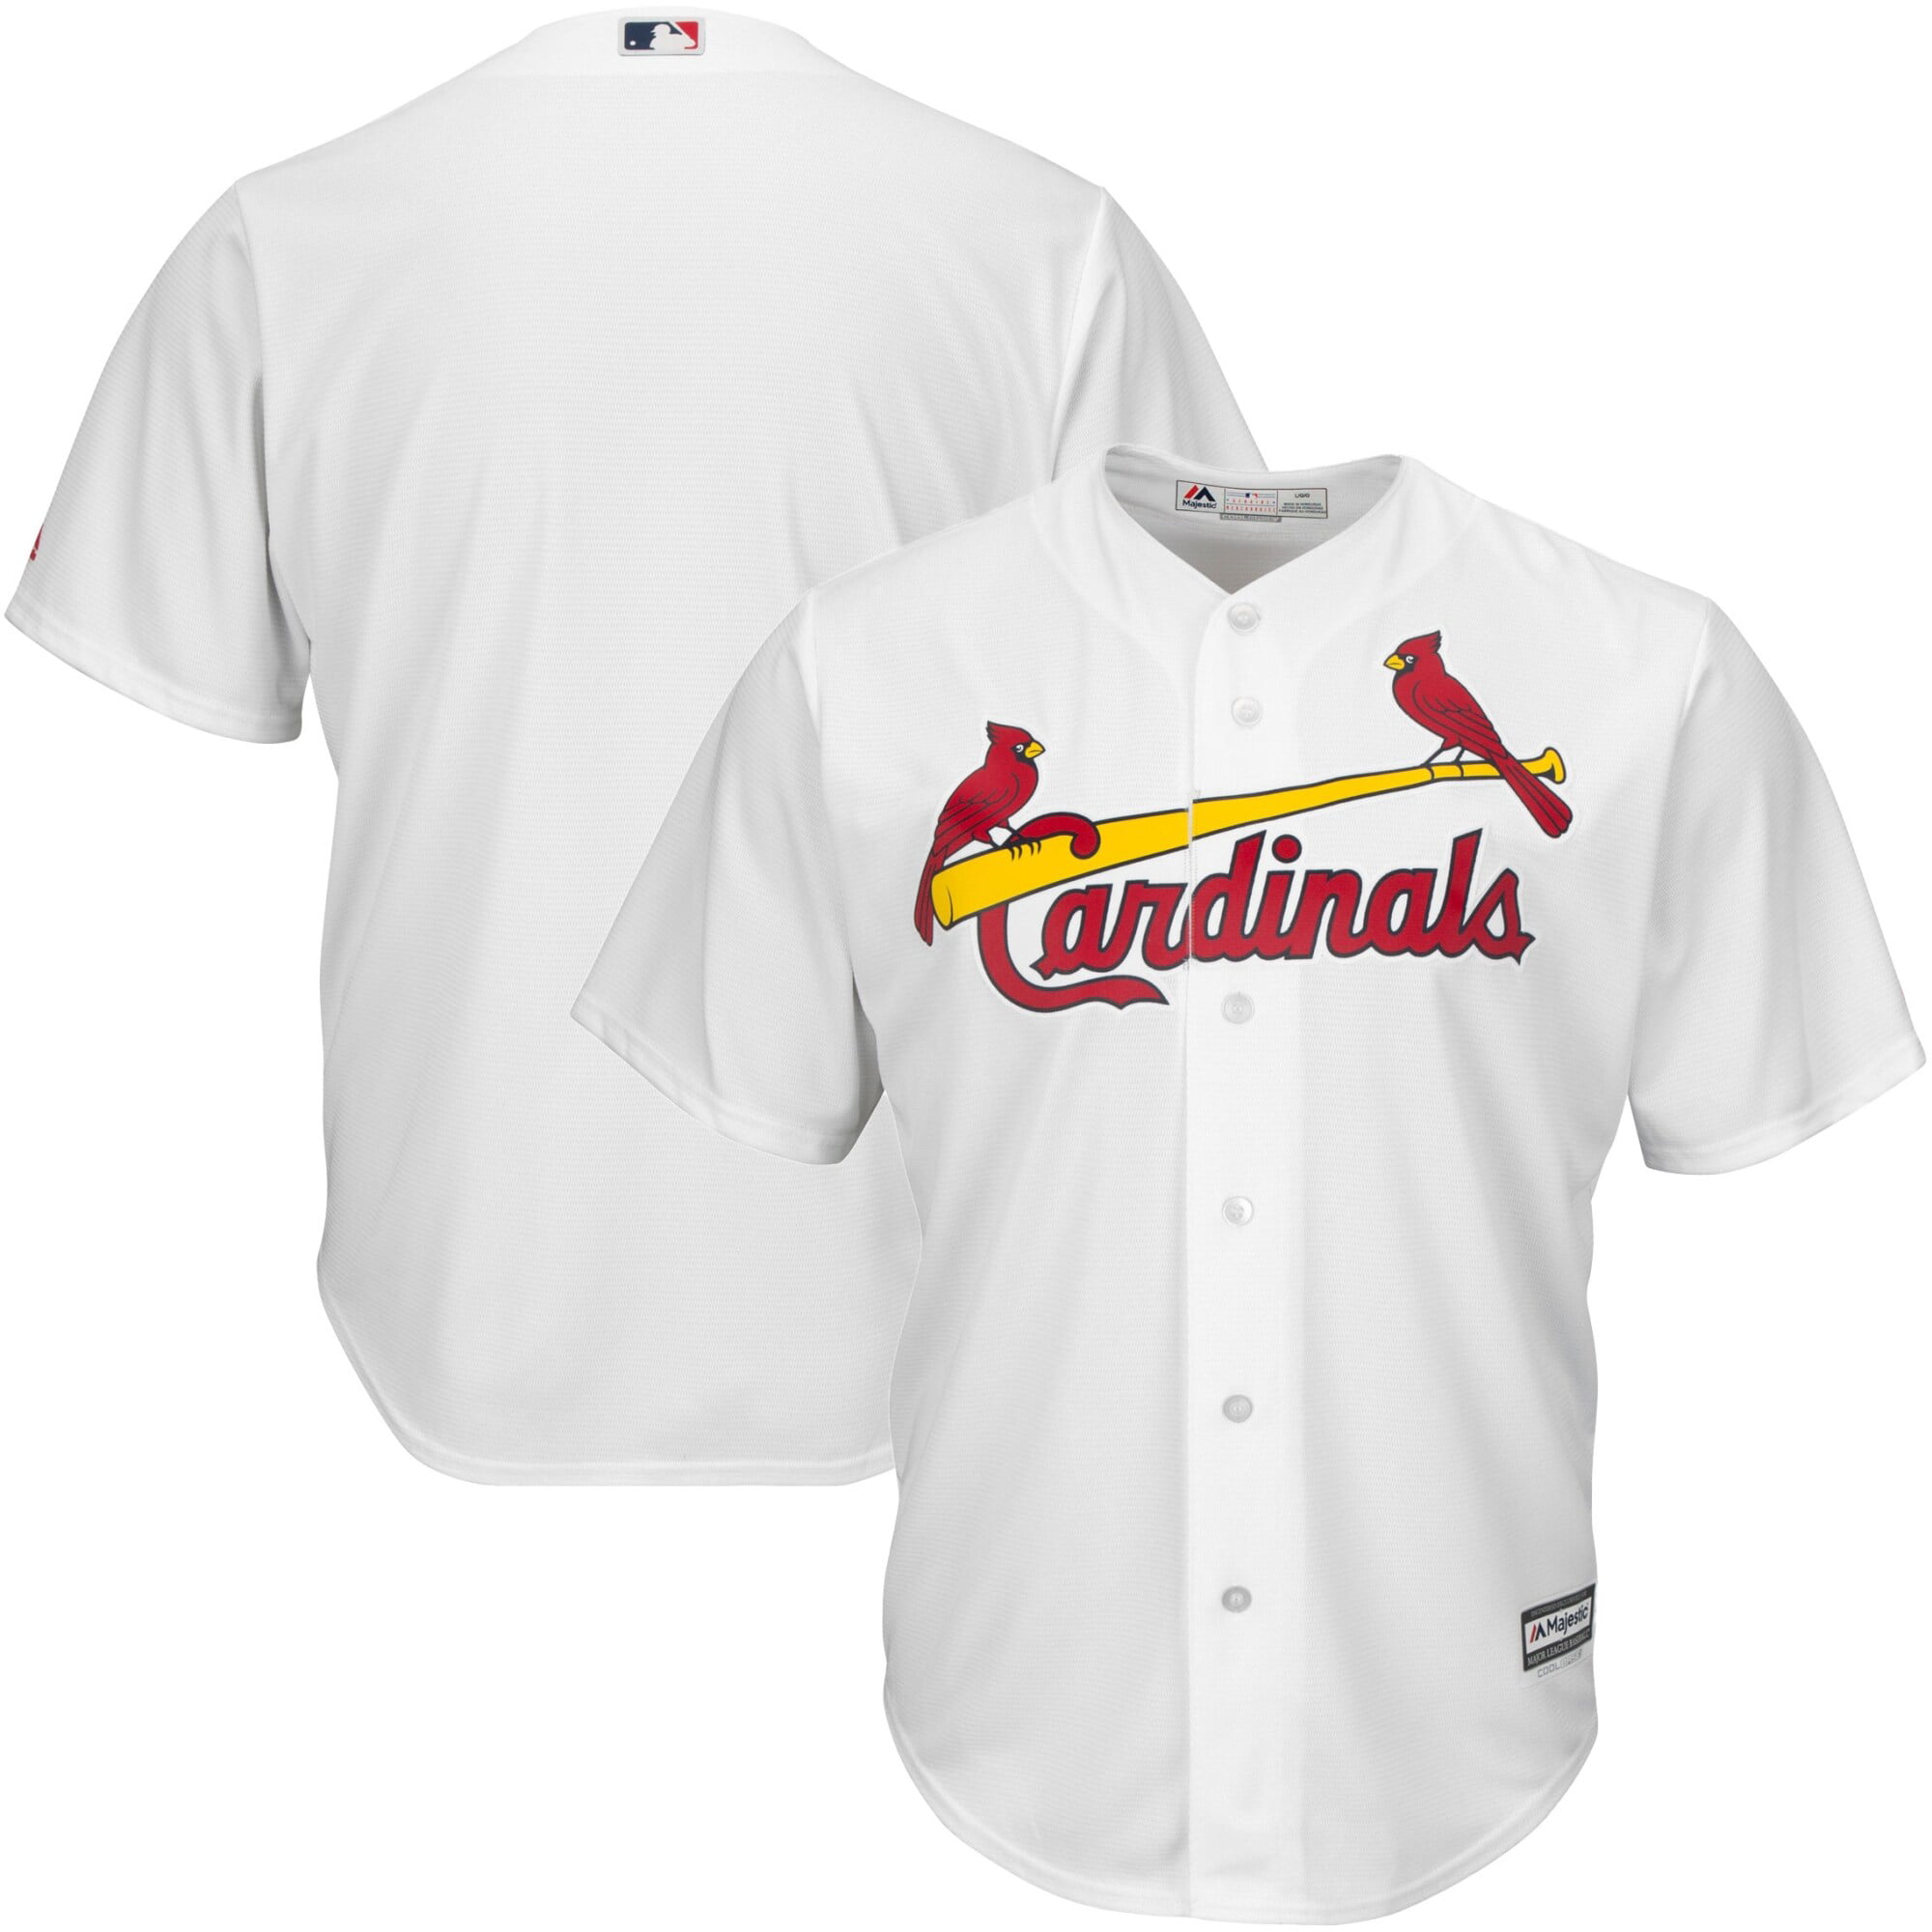 cardinals jersey today